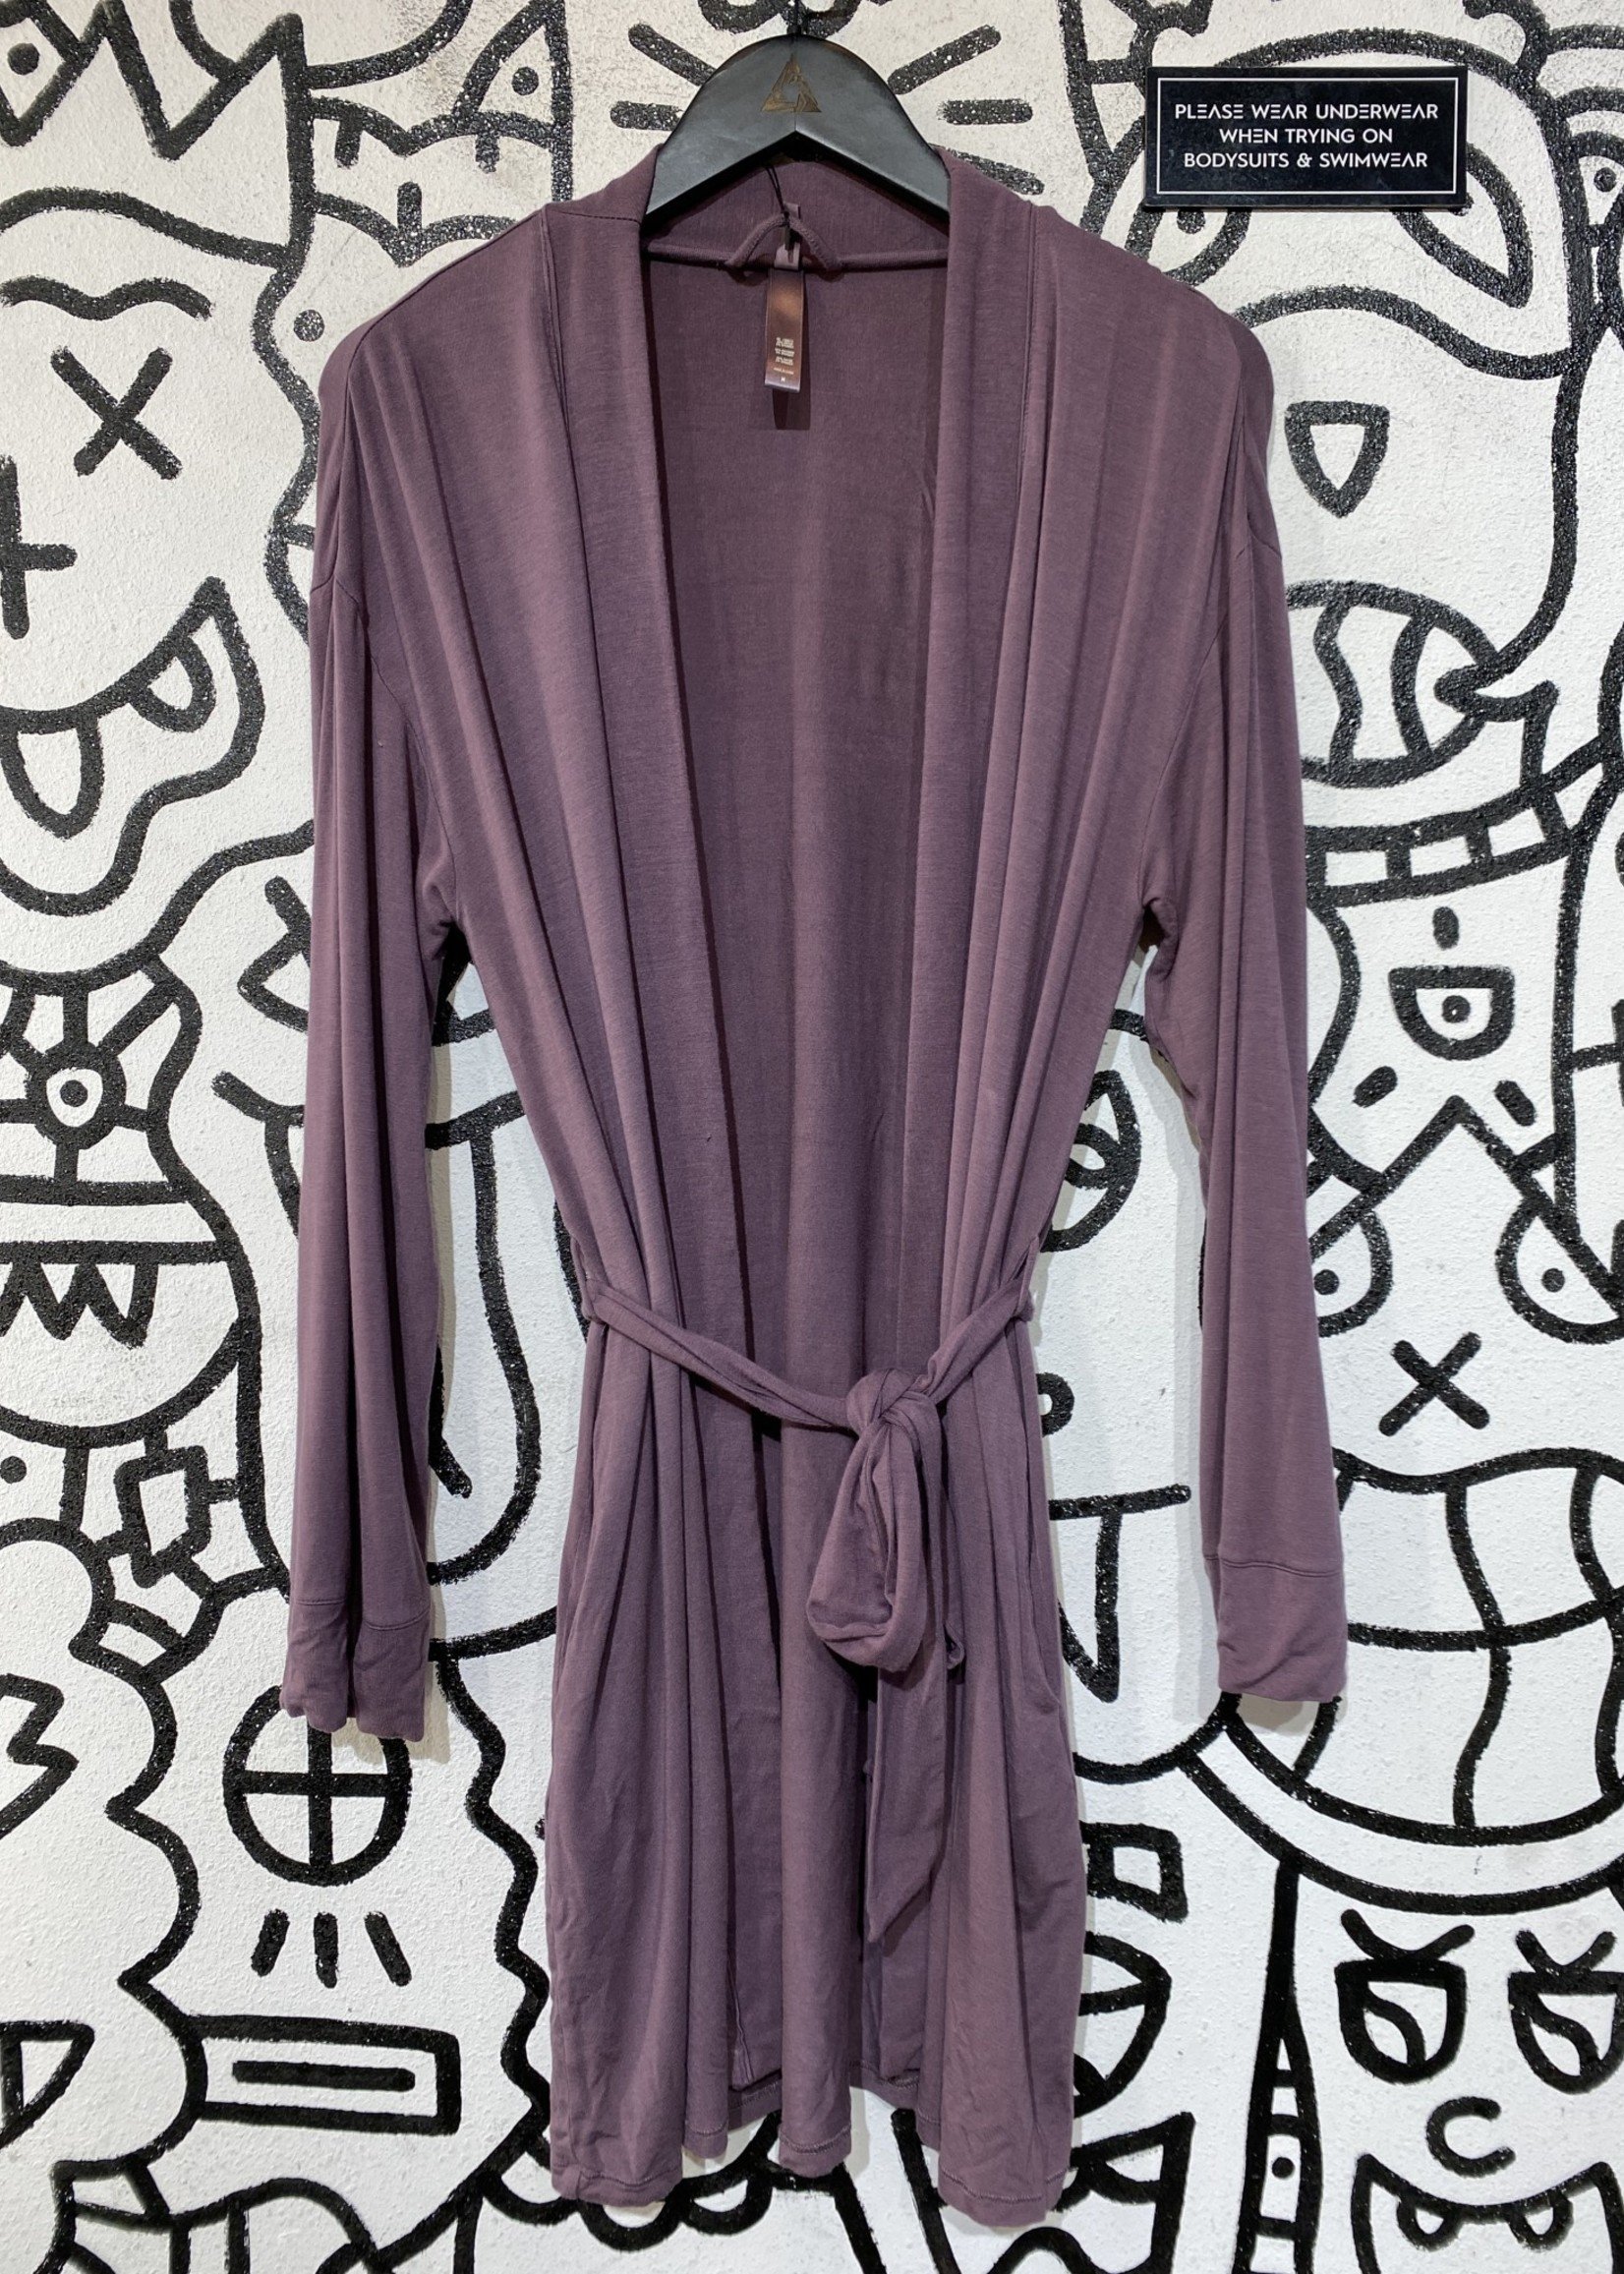 Skims Purple Robe with Tie L - ALT REBEL